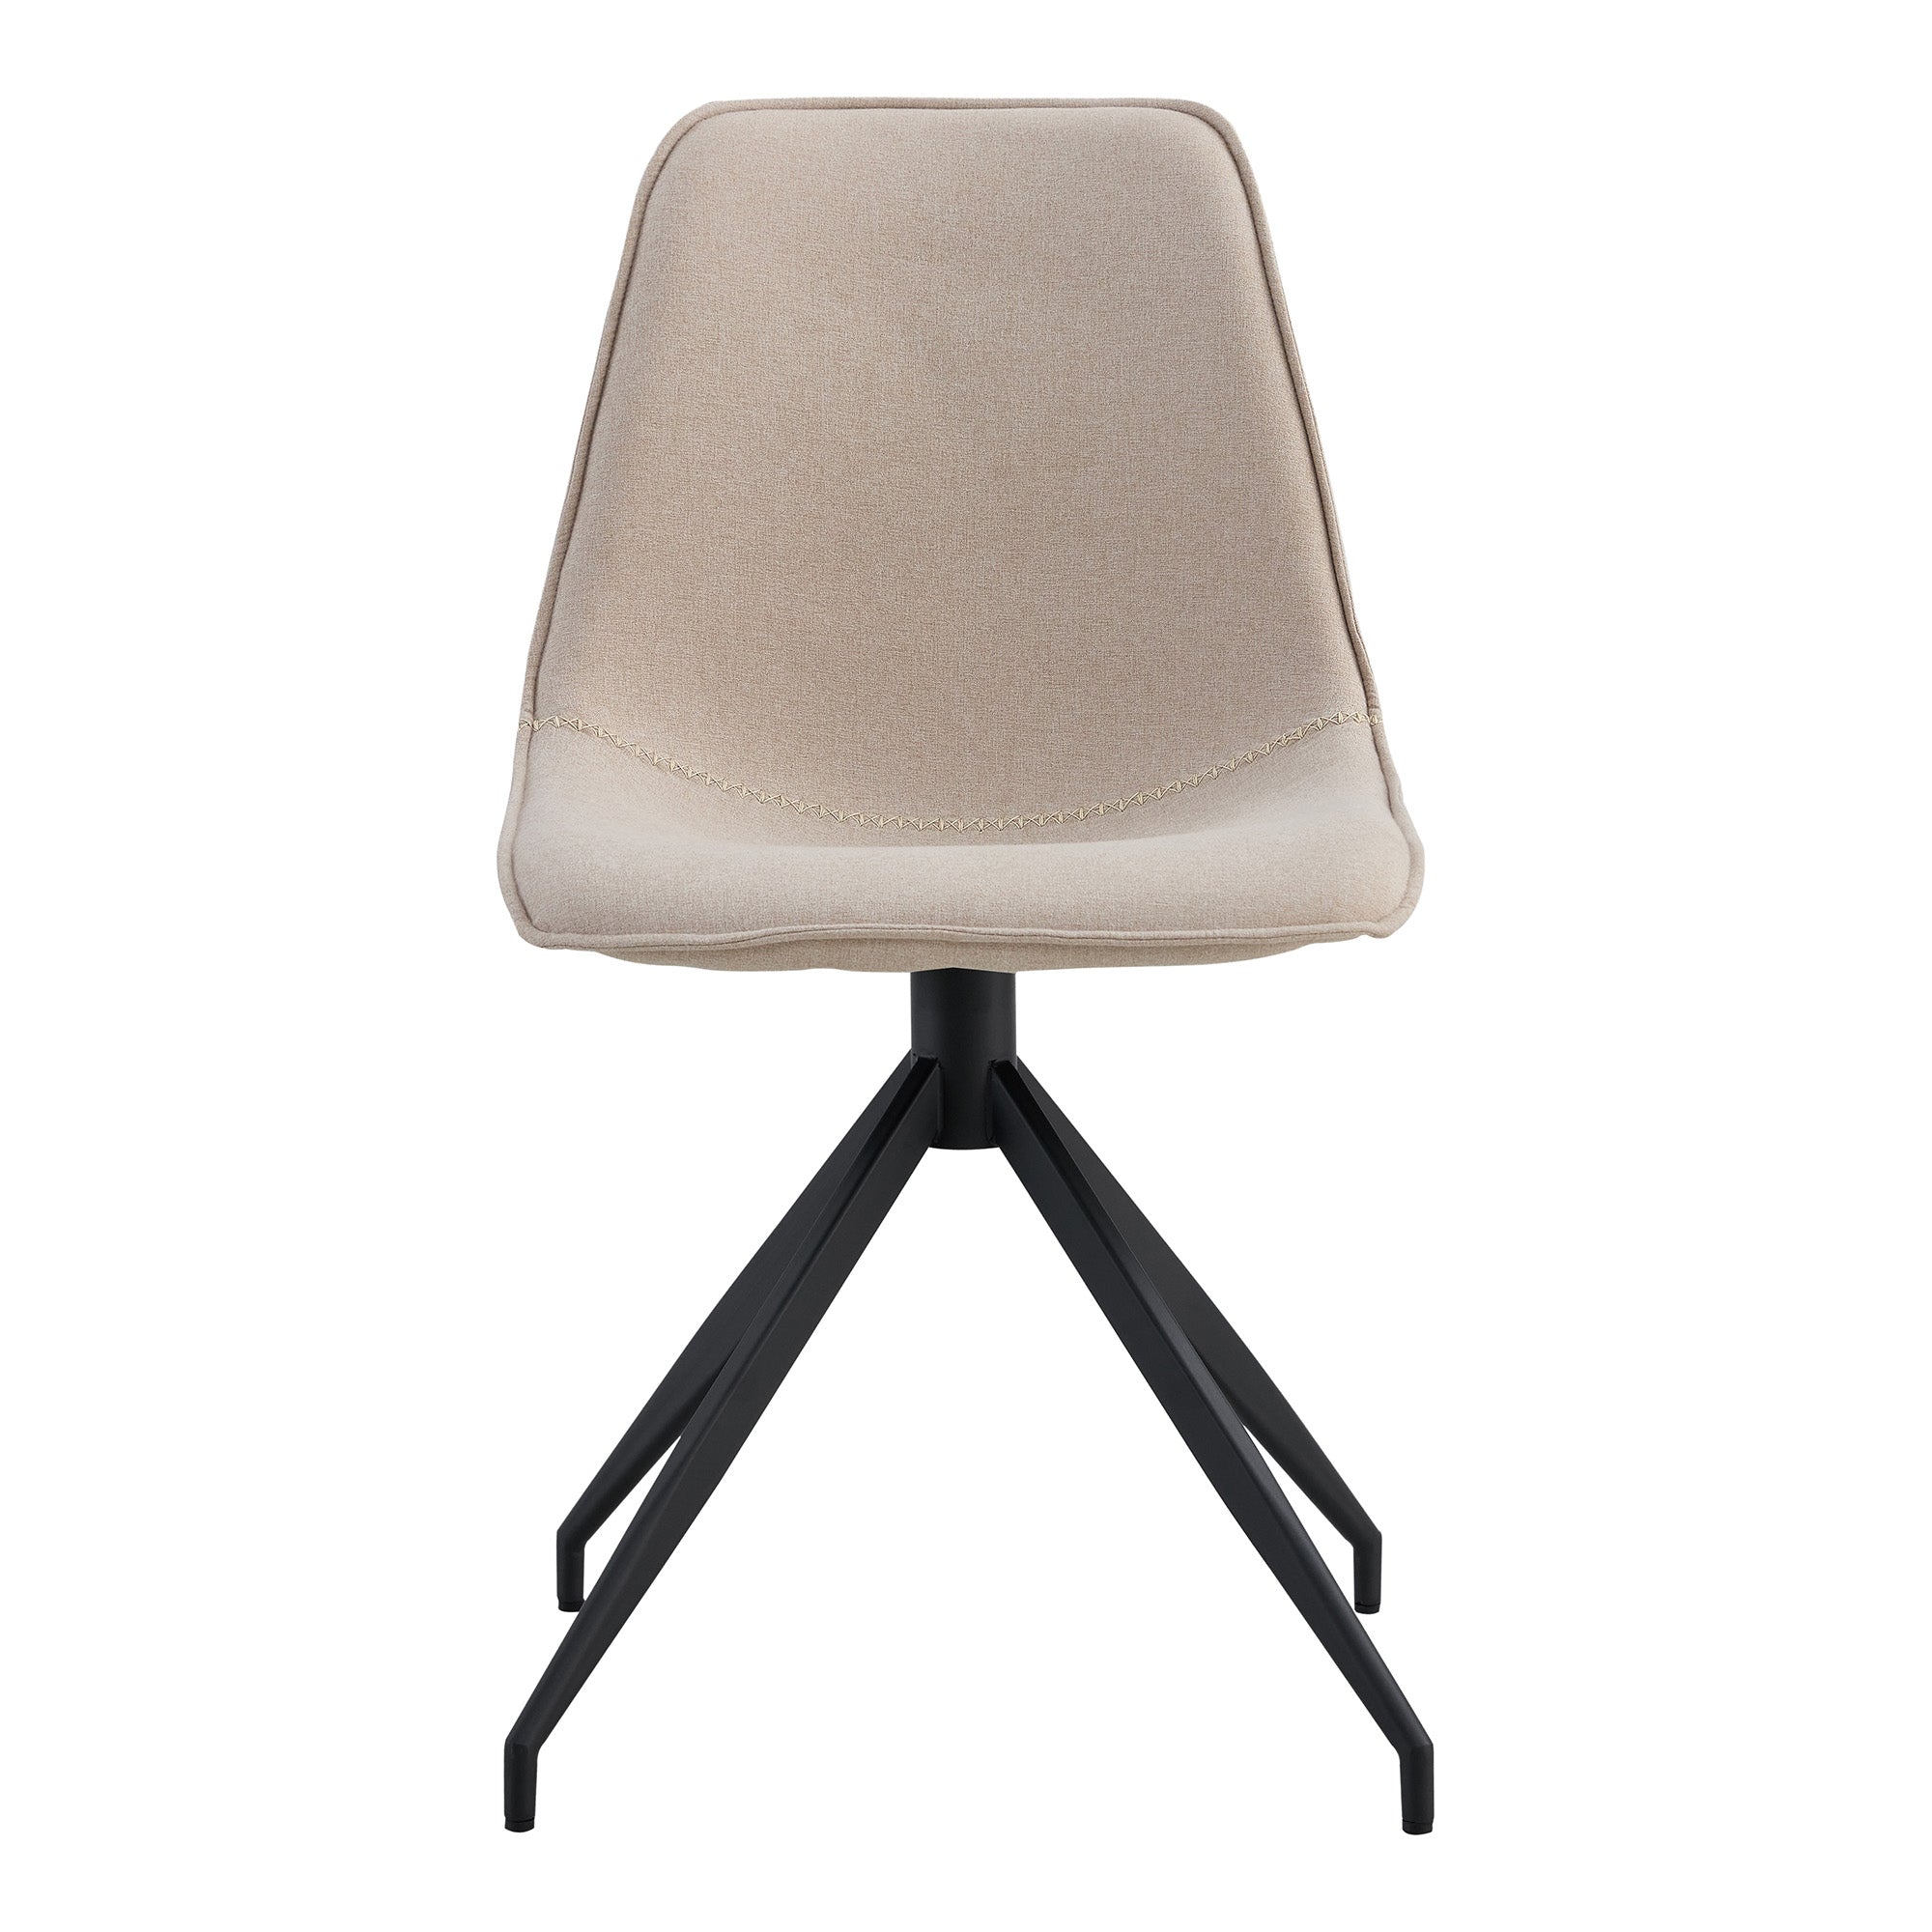 Monaco Spisebordsstol - Spisebordsstol Med Drejefod, Sand Med Sorte Ben, Hn1230 ⎮ Sæt af 2 stk. ⎮ 5713917025343 ⎮ 1001285 